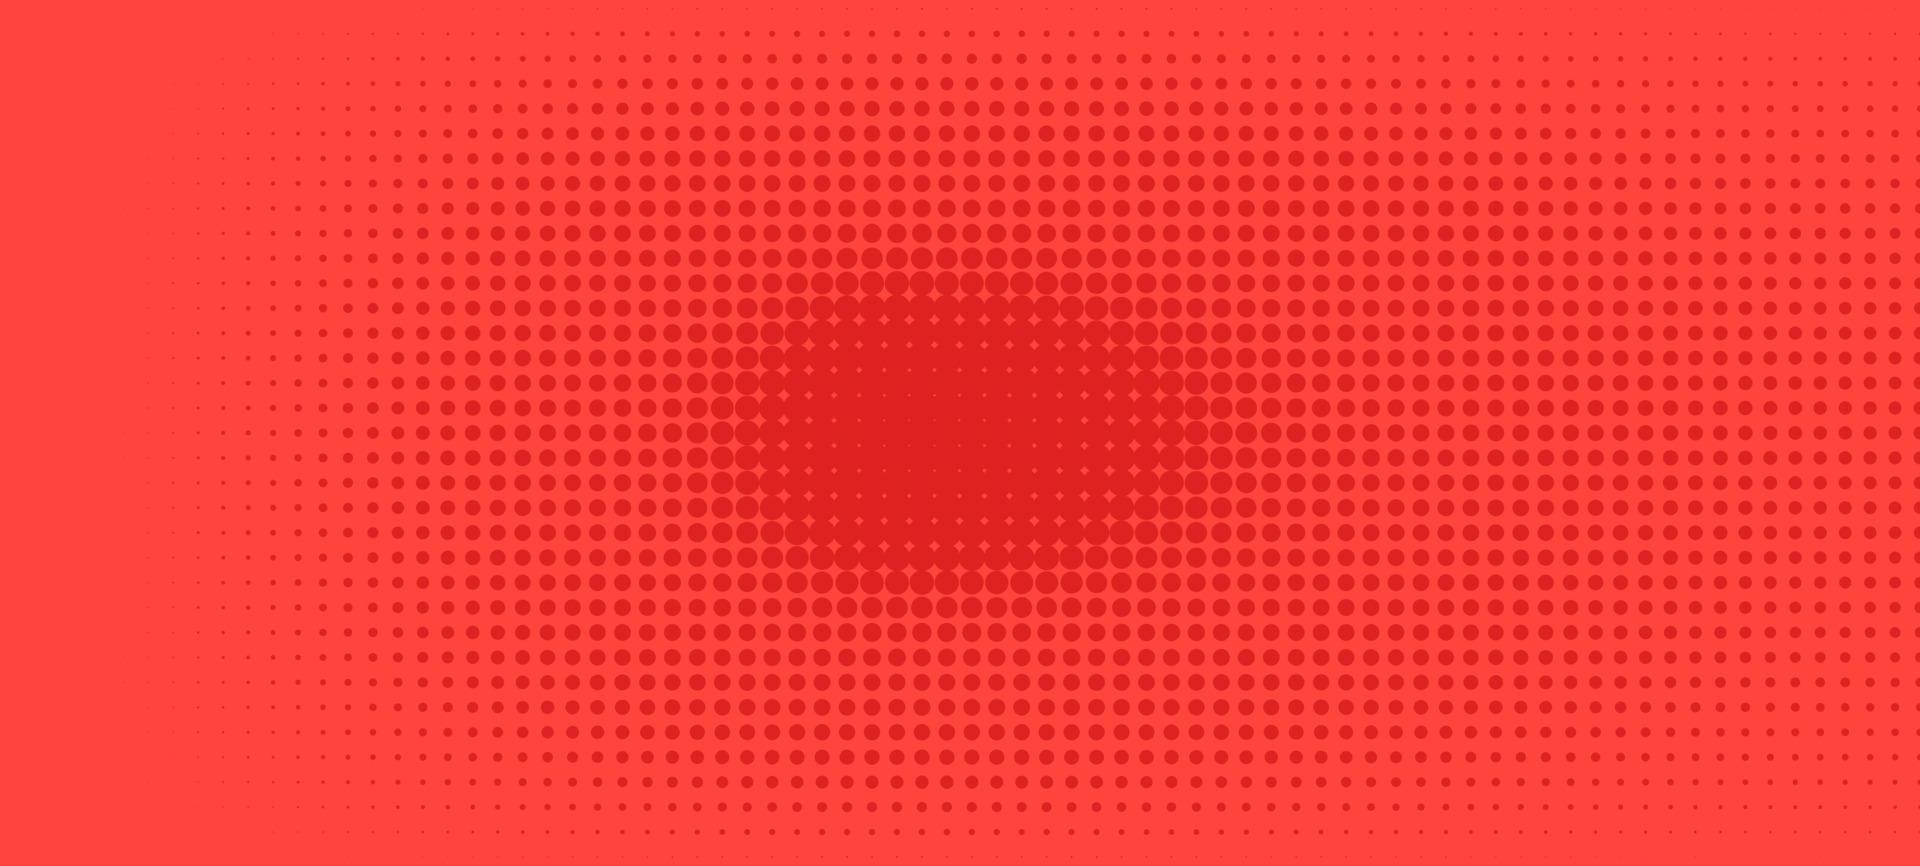 semitono en estilo abstracto. textura de vector de banner retro geométrico. impresión moderna. fondo rojo. efecto de luz